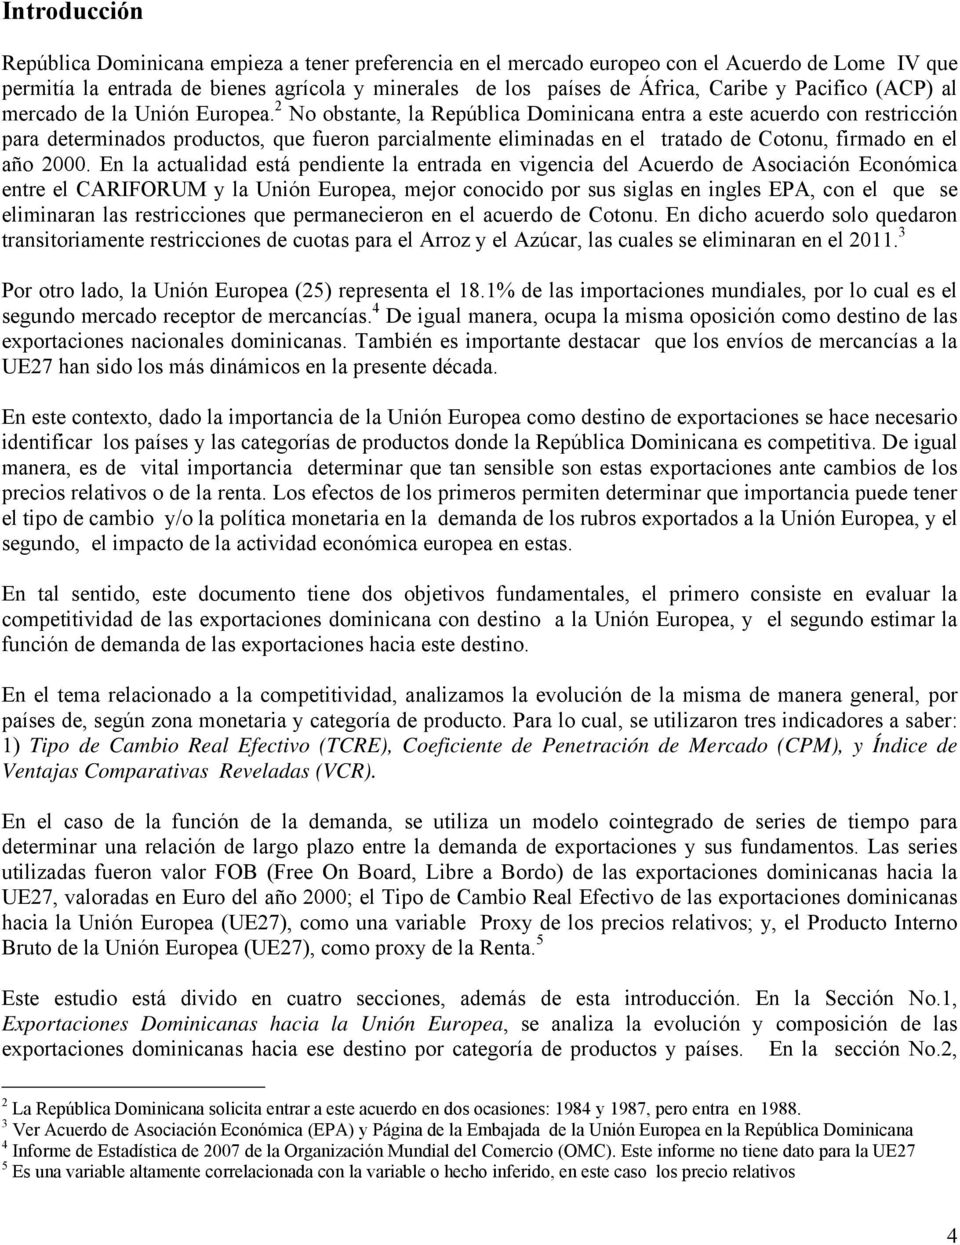 2 No obsane, la Reública Dominicana enra a ese acuerdo con resricción ara deerminados roducos, que fueron arcialmene eliminadas en el raado de Coonu, firmado en el año 2000.